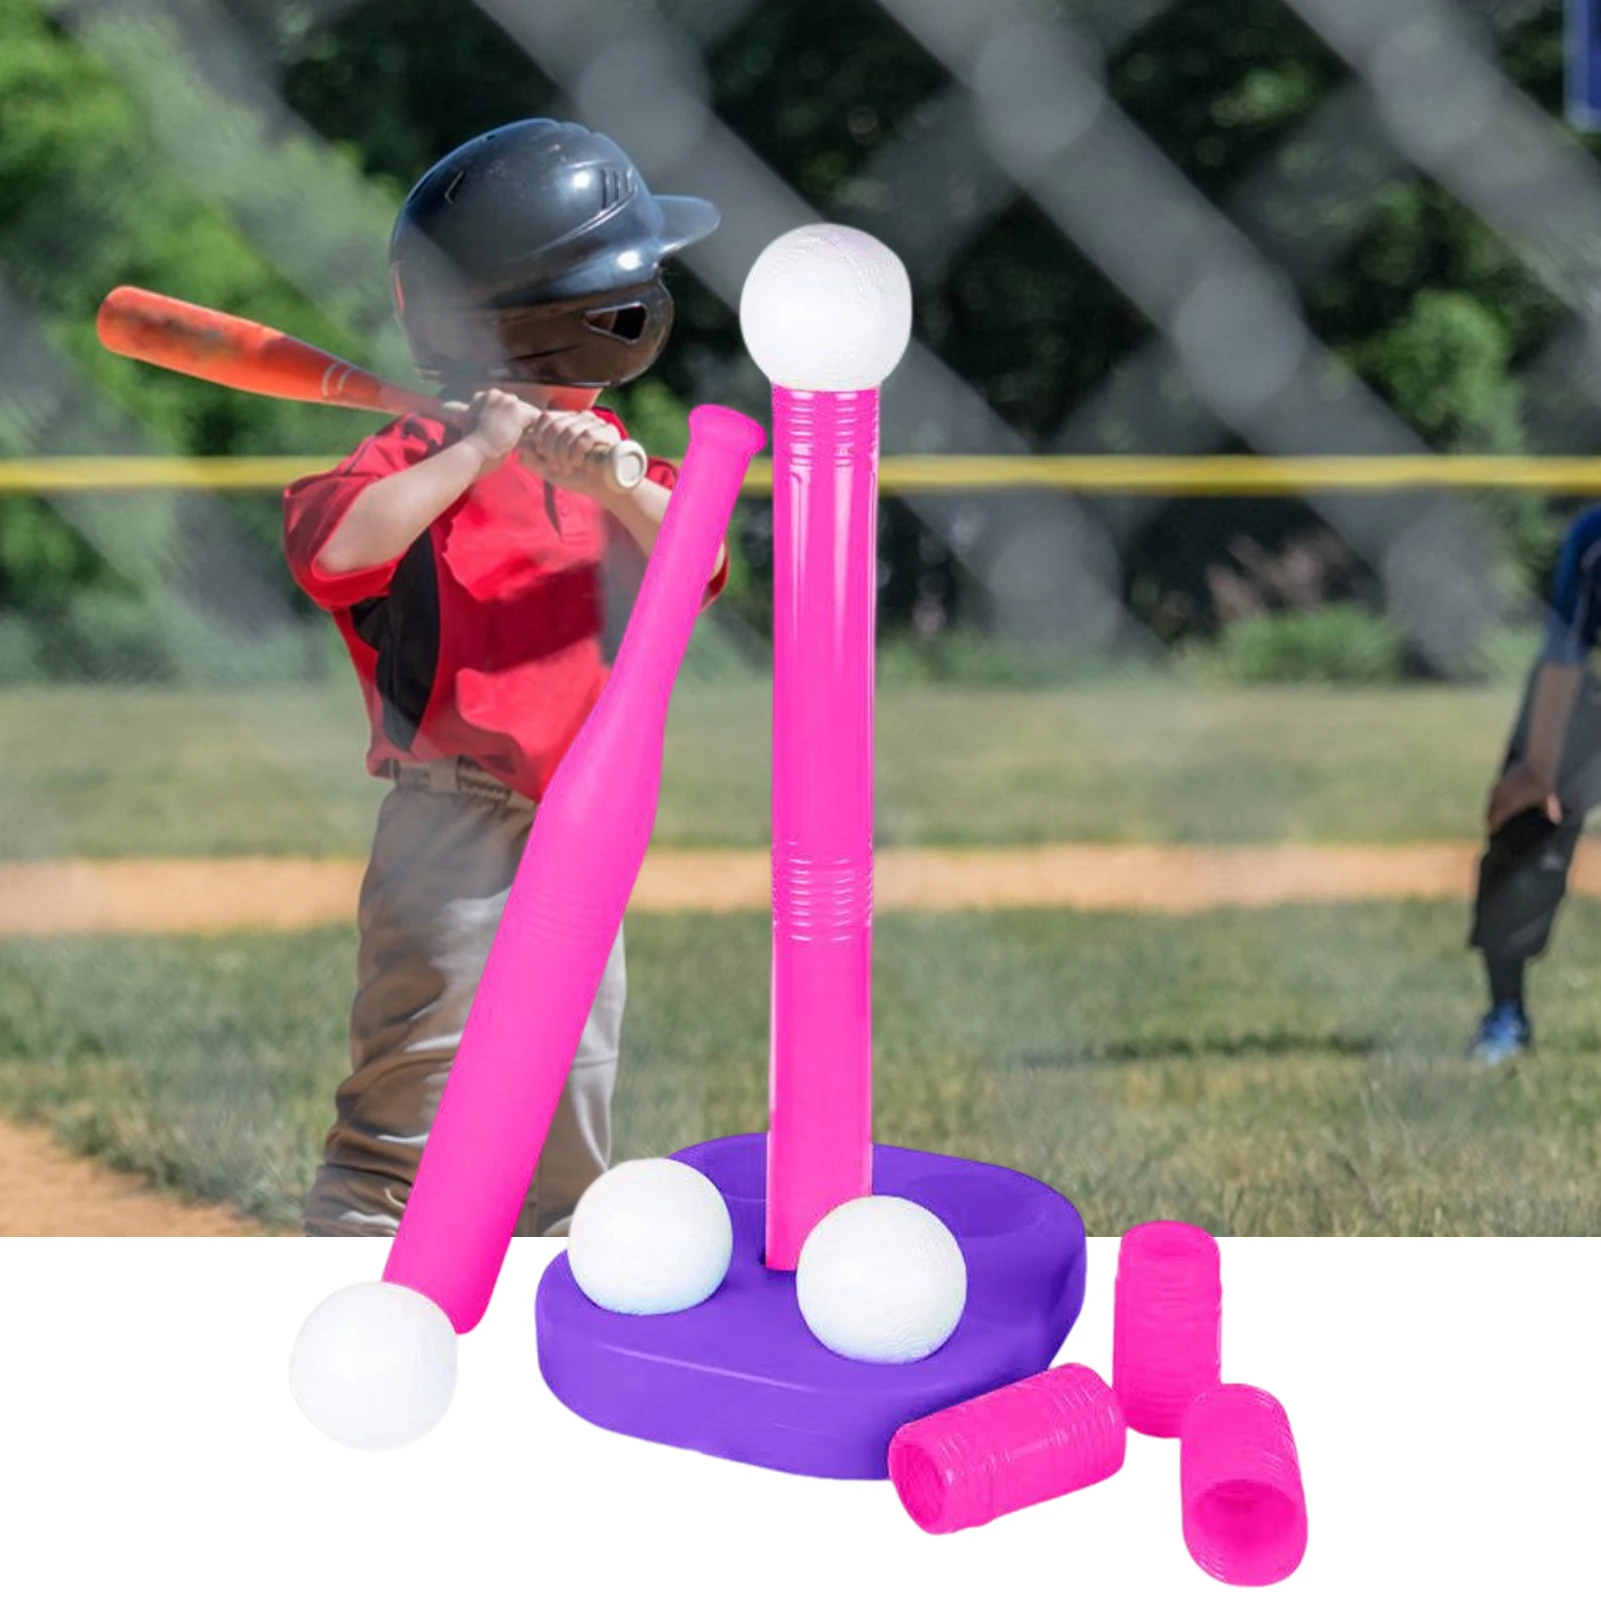 Interesting 1 Set Funny Kids Baseball Bat Tee Ball Toys Stand Plastic Kids Baseball Tee Burr-free for Child Boys Girls Games